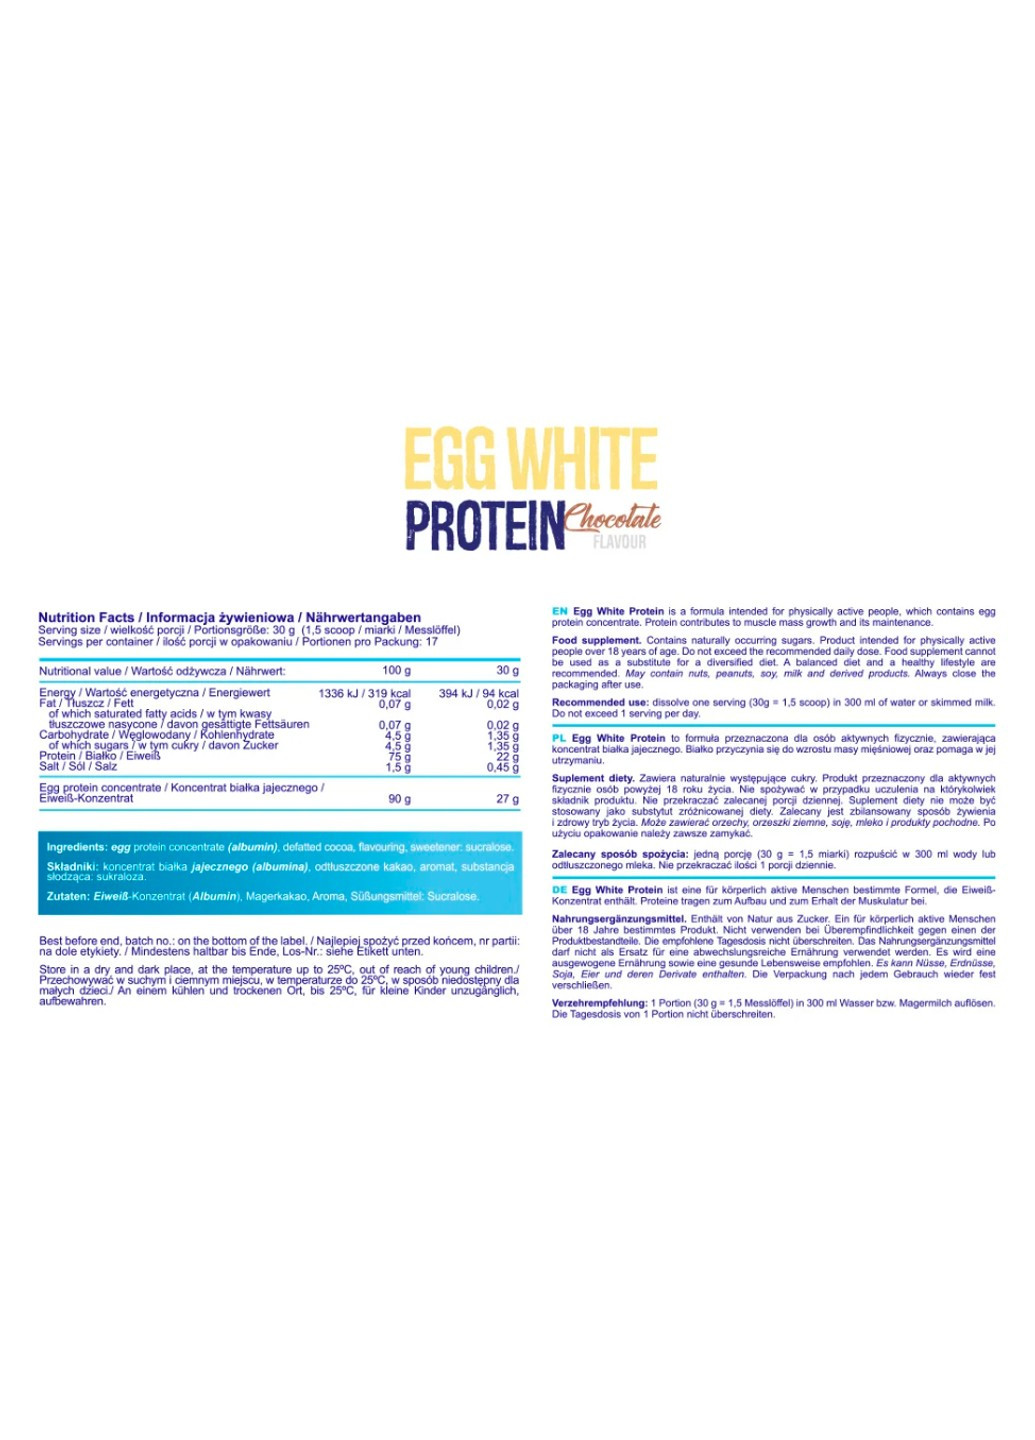 Протеин яичного белка Egg White Protein - 510г Шоколад Allnutrition (278006912)